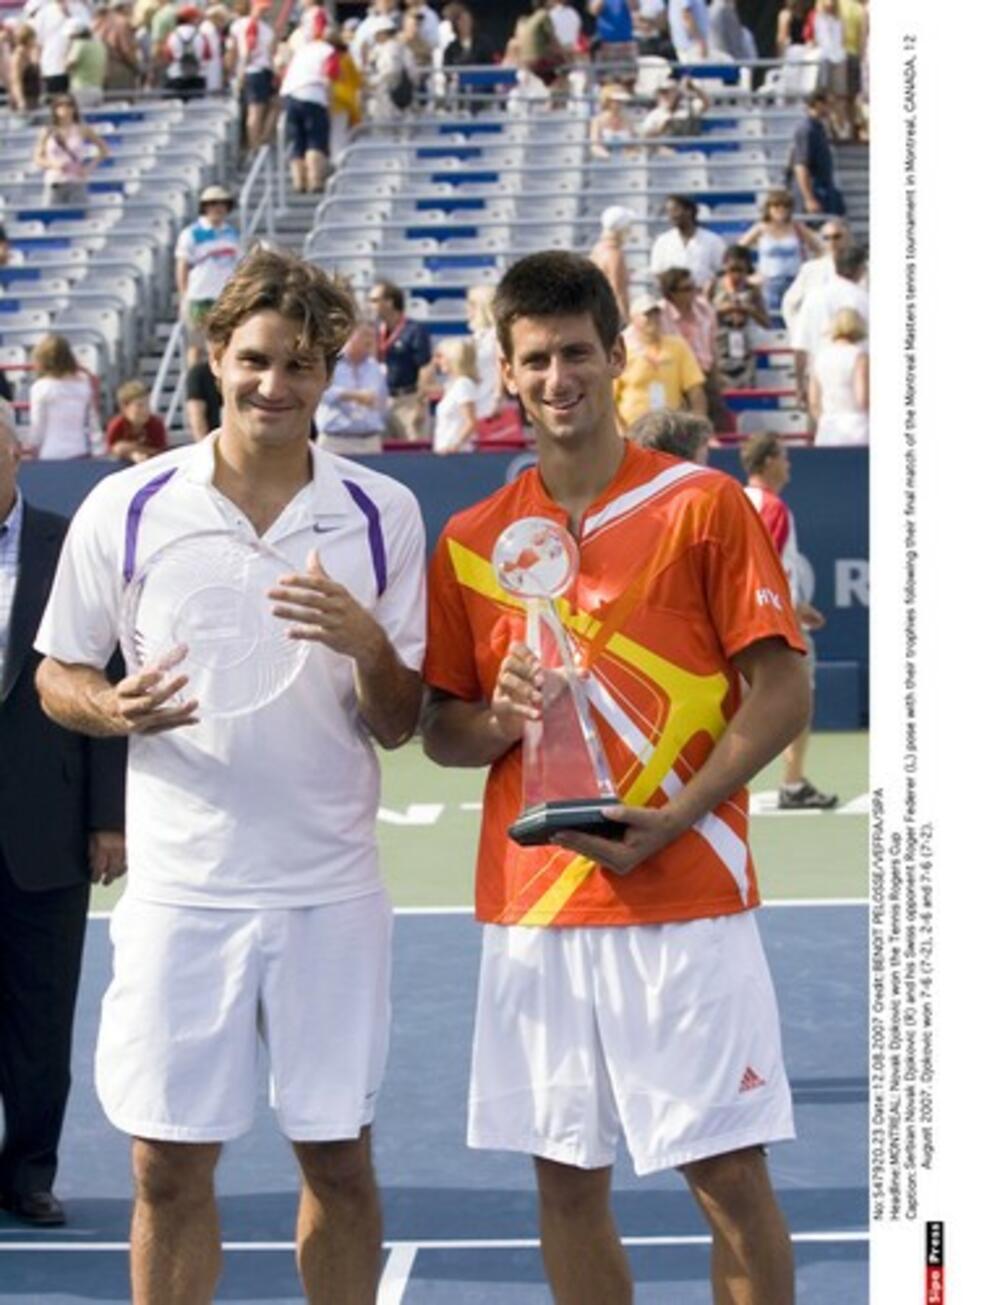 Federer i Đoković